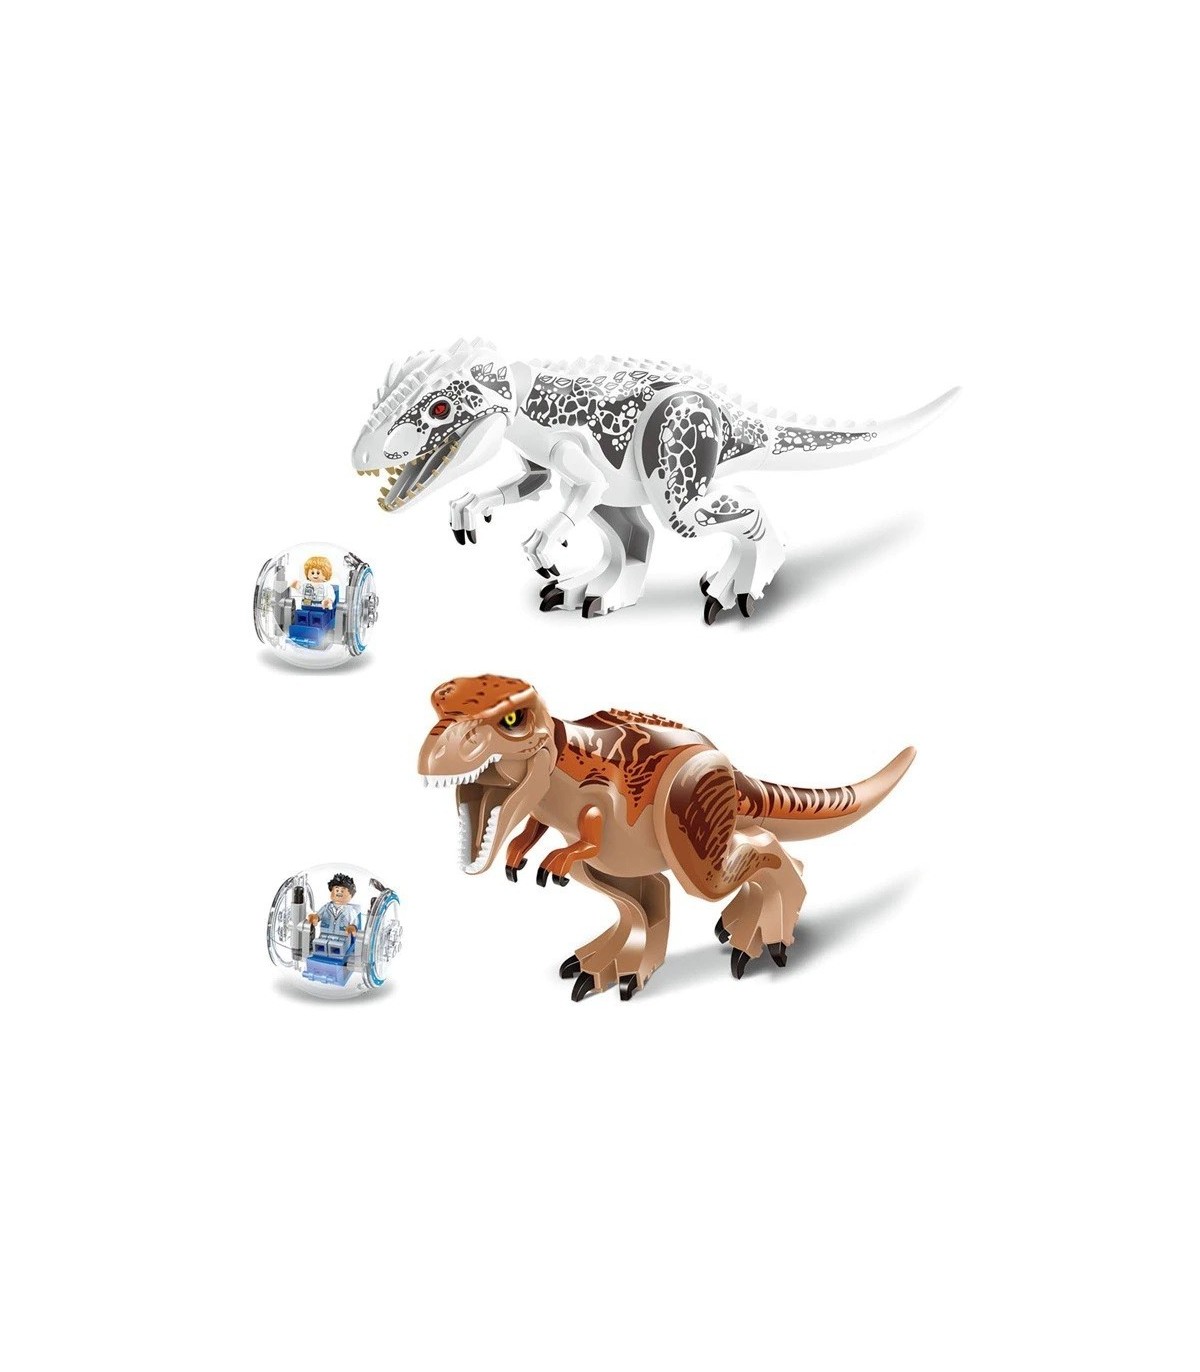 Compra ya tu Jurassic World dinosaurios Compatible con las grandes marcas  por solo 27,29 €